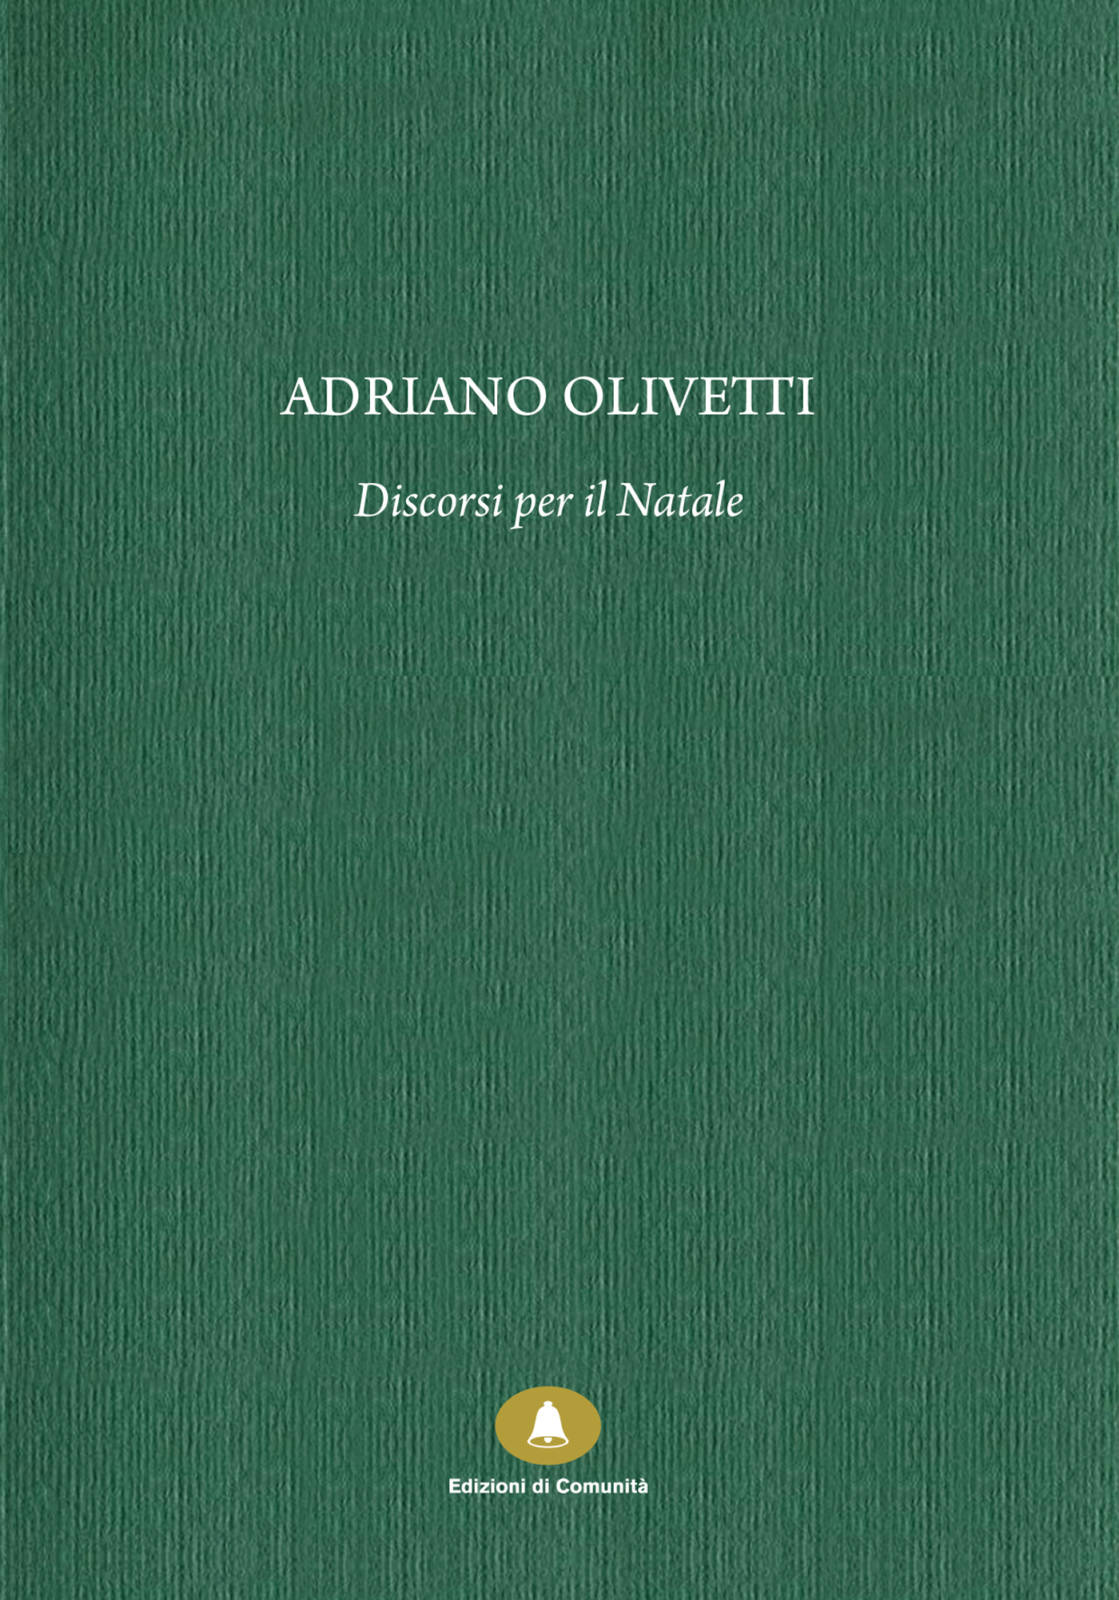 Adriano Olivetti, Discorsi per il Natale